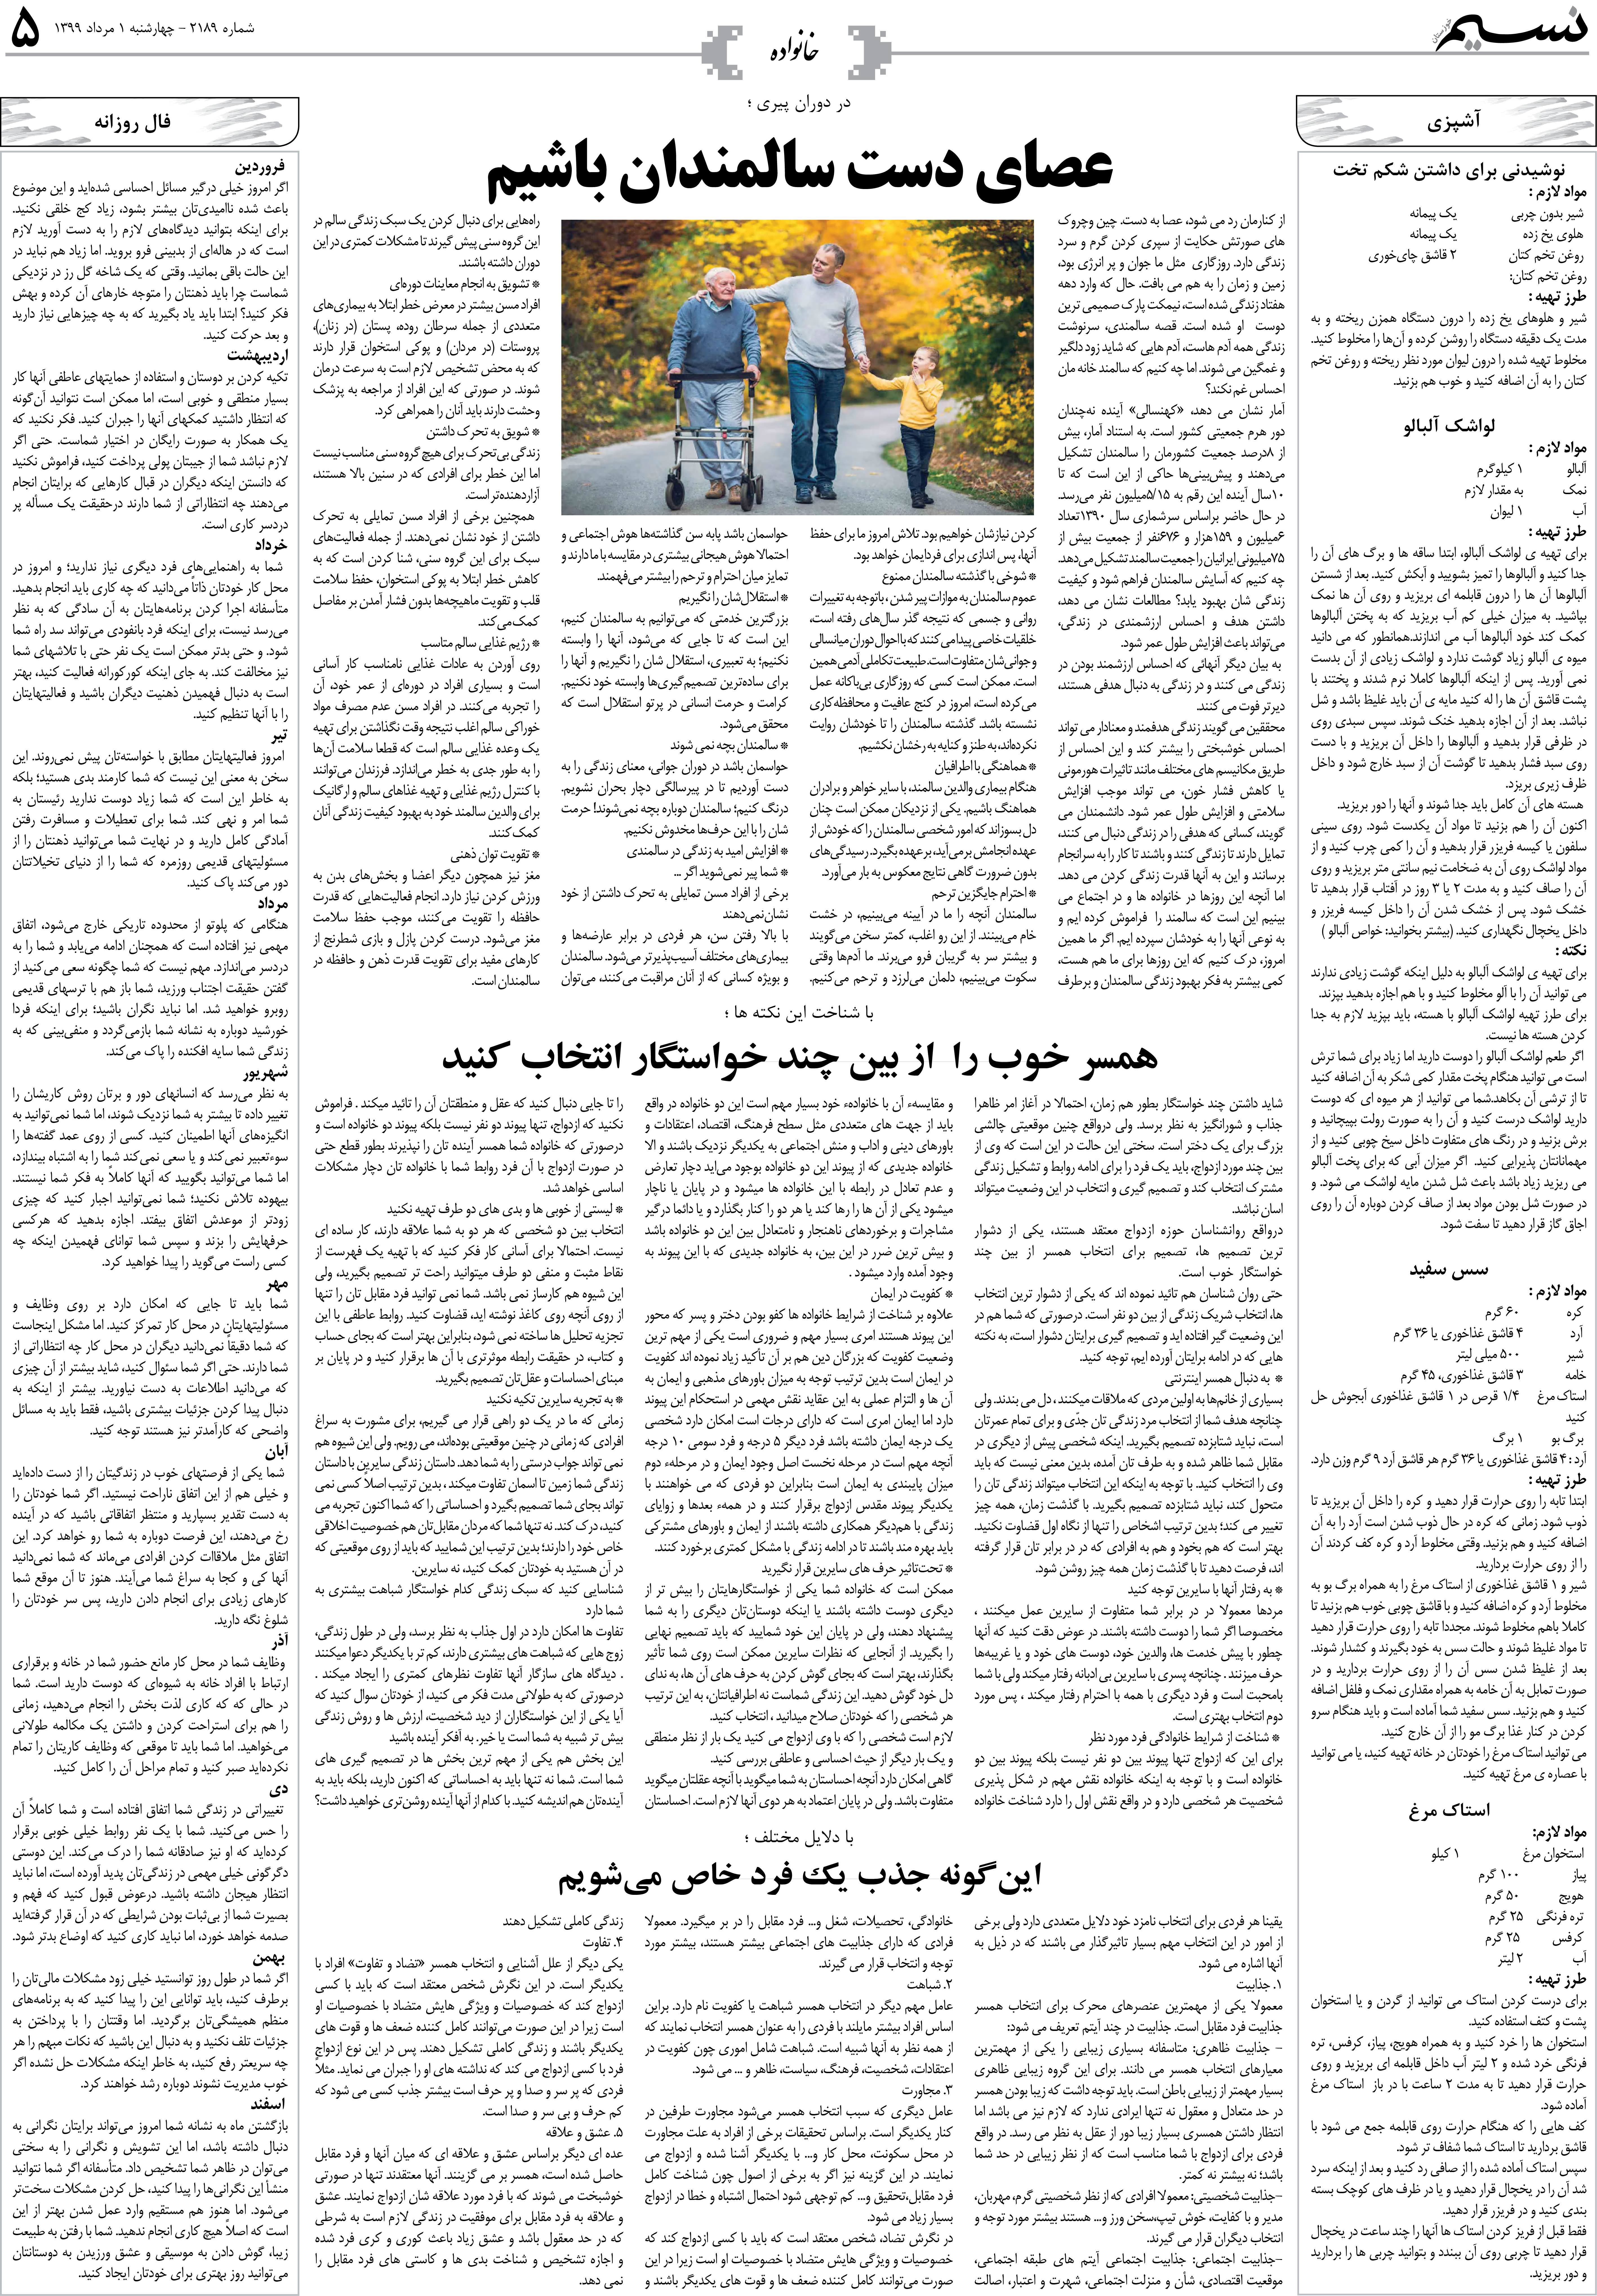 صفحه خانواده روزنامه نسیم شماره 2189